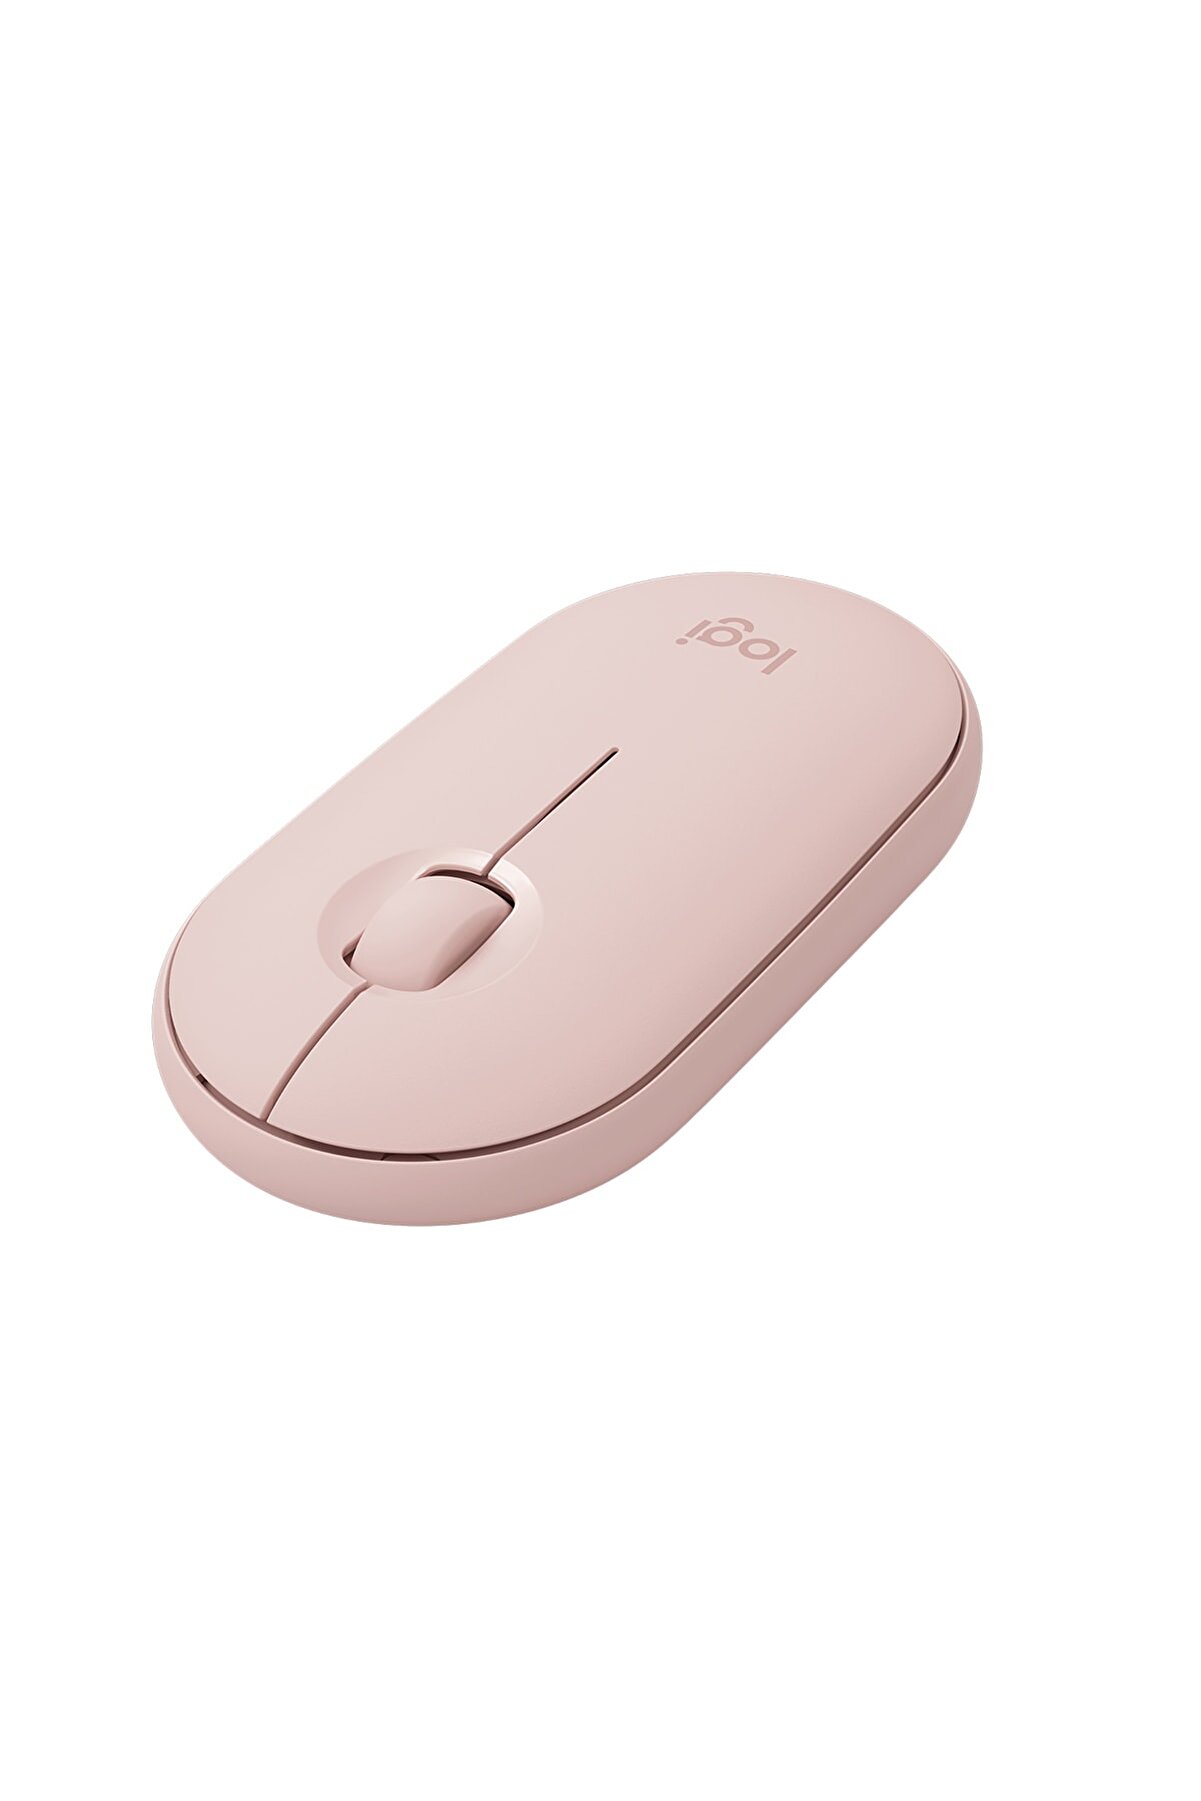 logitech M350 Pebble Sessiz Kablosuz Kompakt Mouse  Pembe